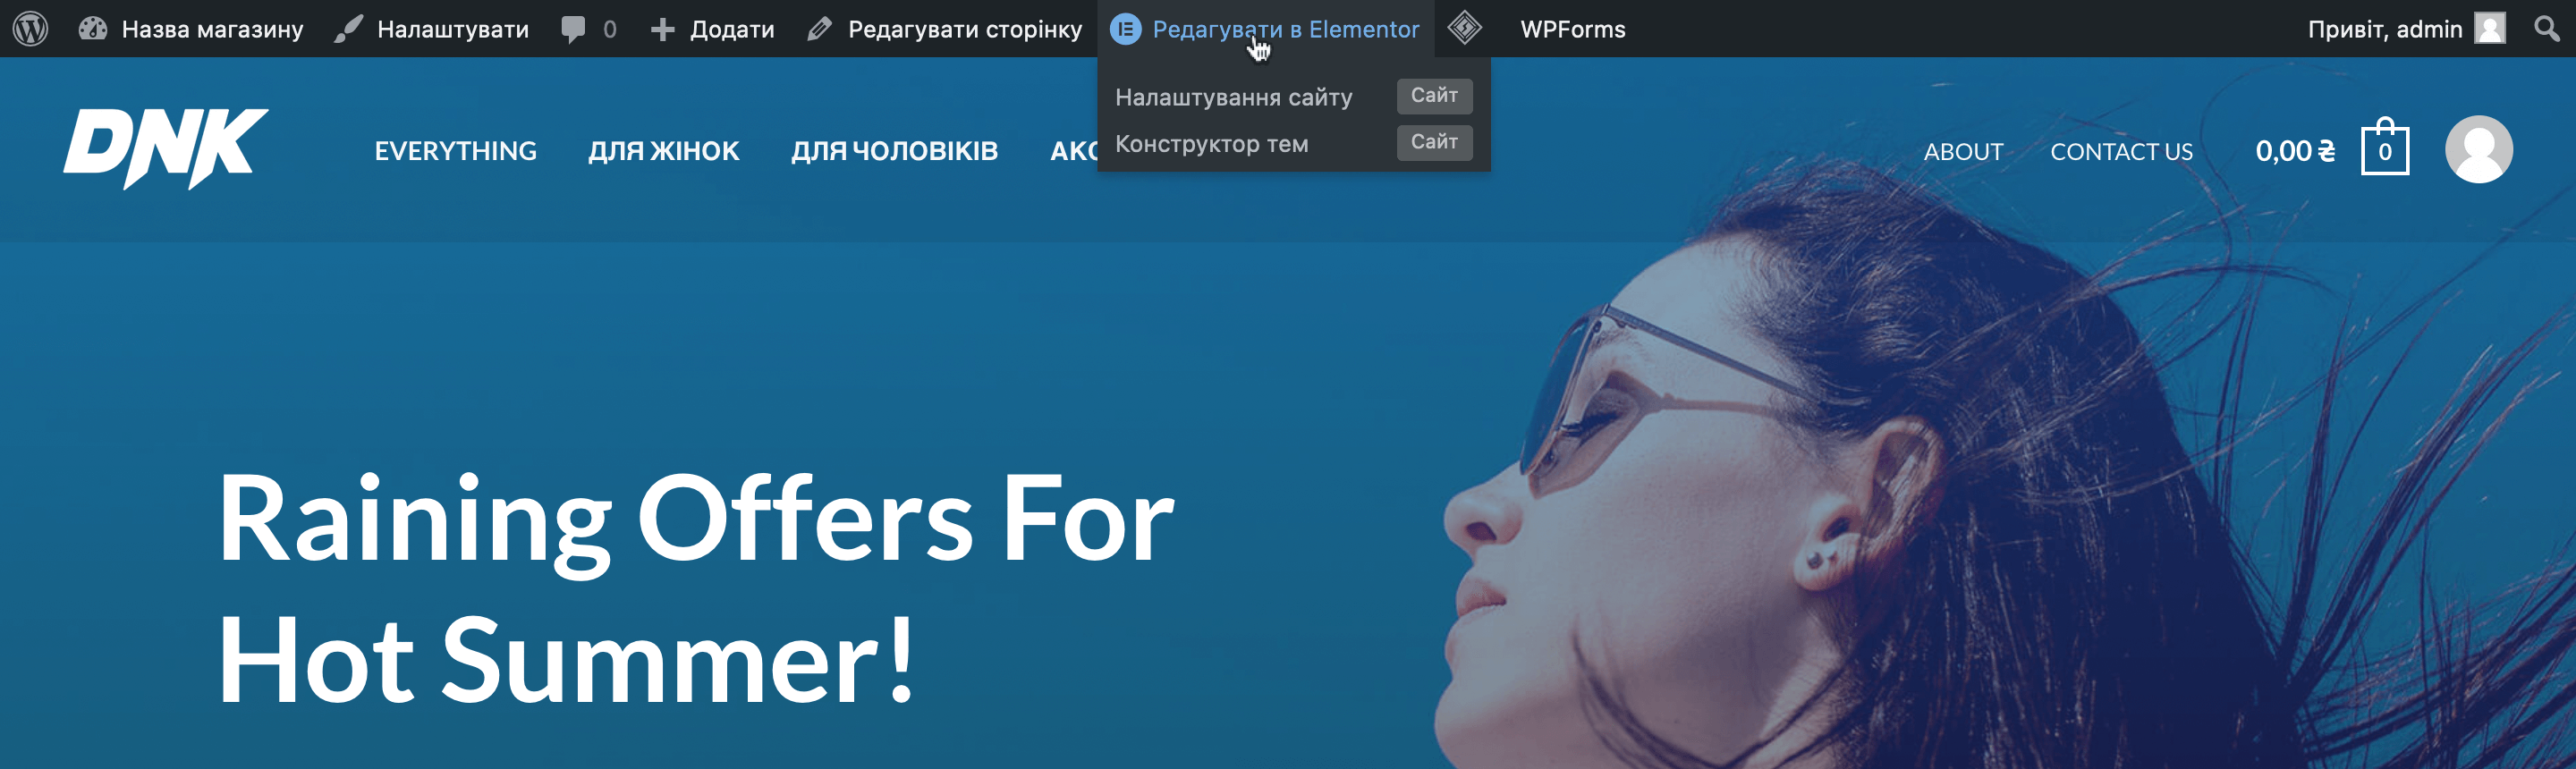 WordPress створити магазин: кнопка «Редагувати в Elementor» на панелі швидкого доступу на головній сторінці магазину